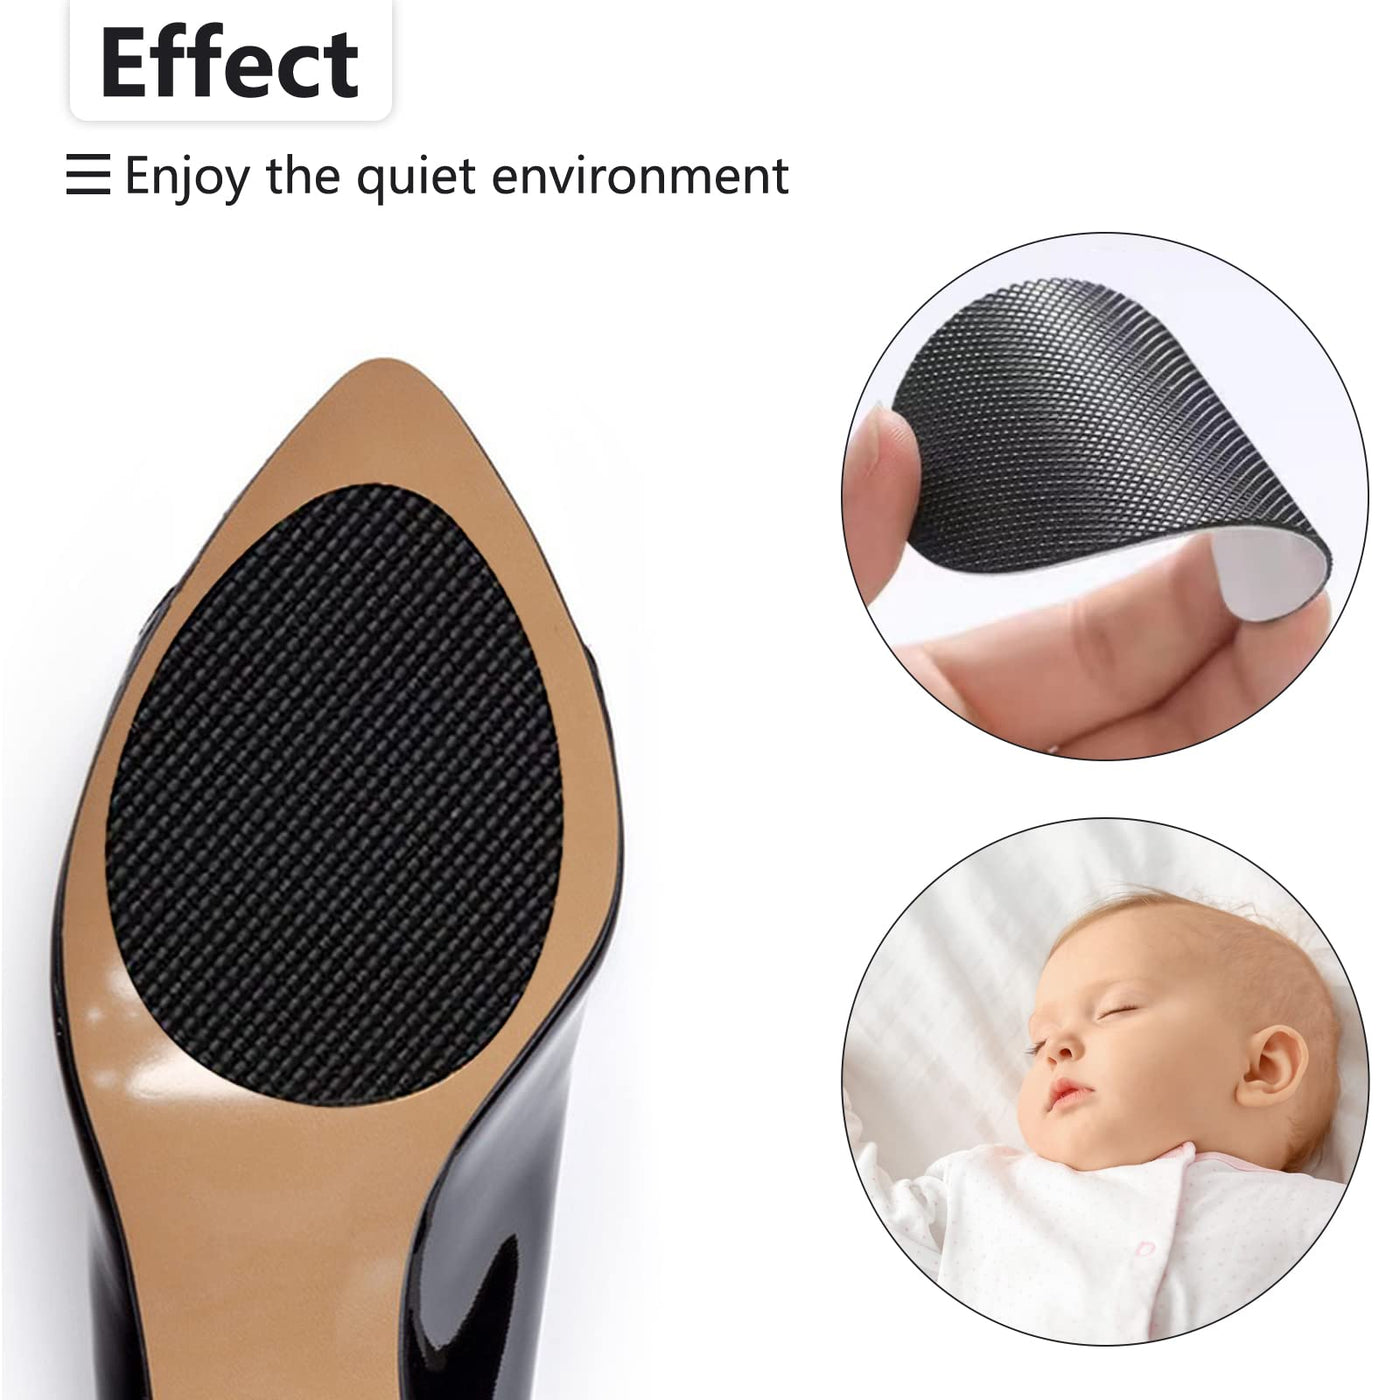 24Pcs Non-Skid Shoe Pads, Anti-Slip Shoe Grips for High Heels, Self-Adhesive  Non-Slip Shoes Pads, Wear-Resistant Rubber Sole, Non-Slip Noise Reduction  for Men&Women's Boots, Flats Etc Black&24pcs